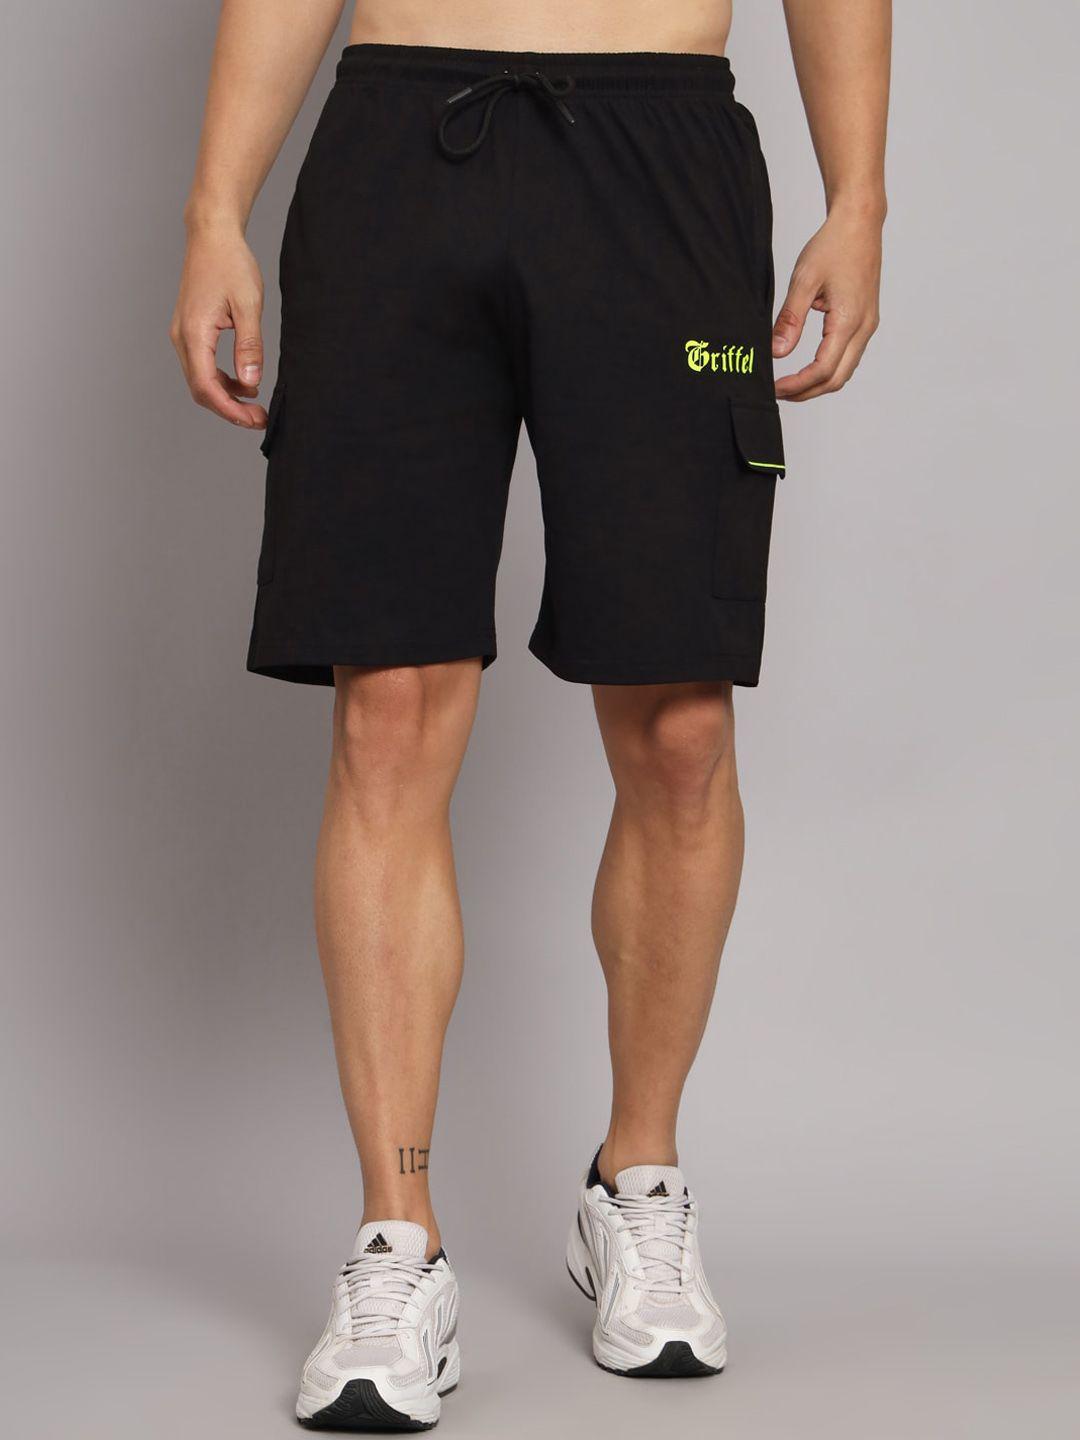 griffel men black loose fit cotton sports shorts